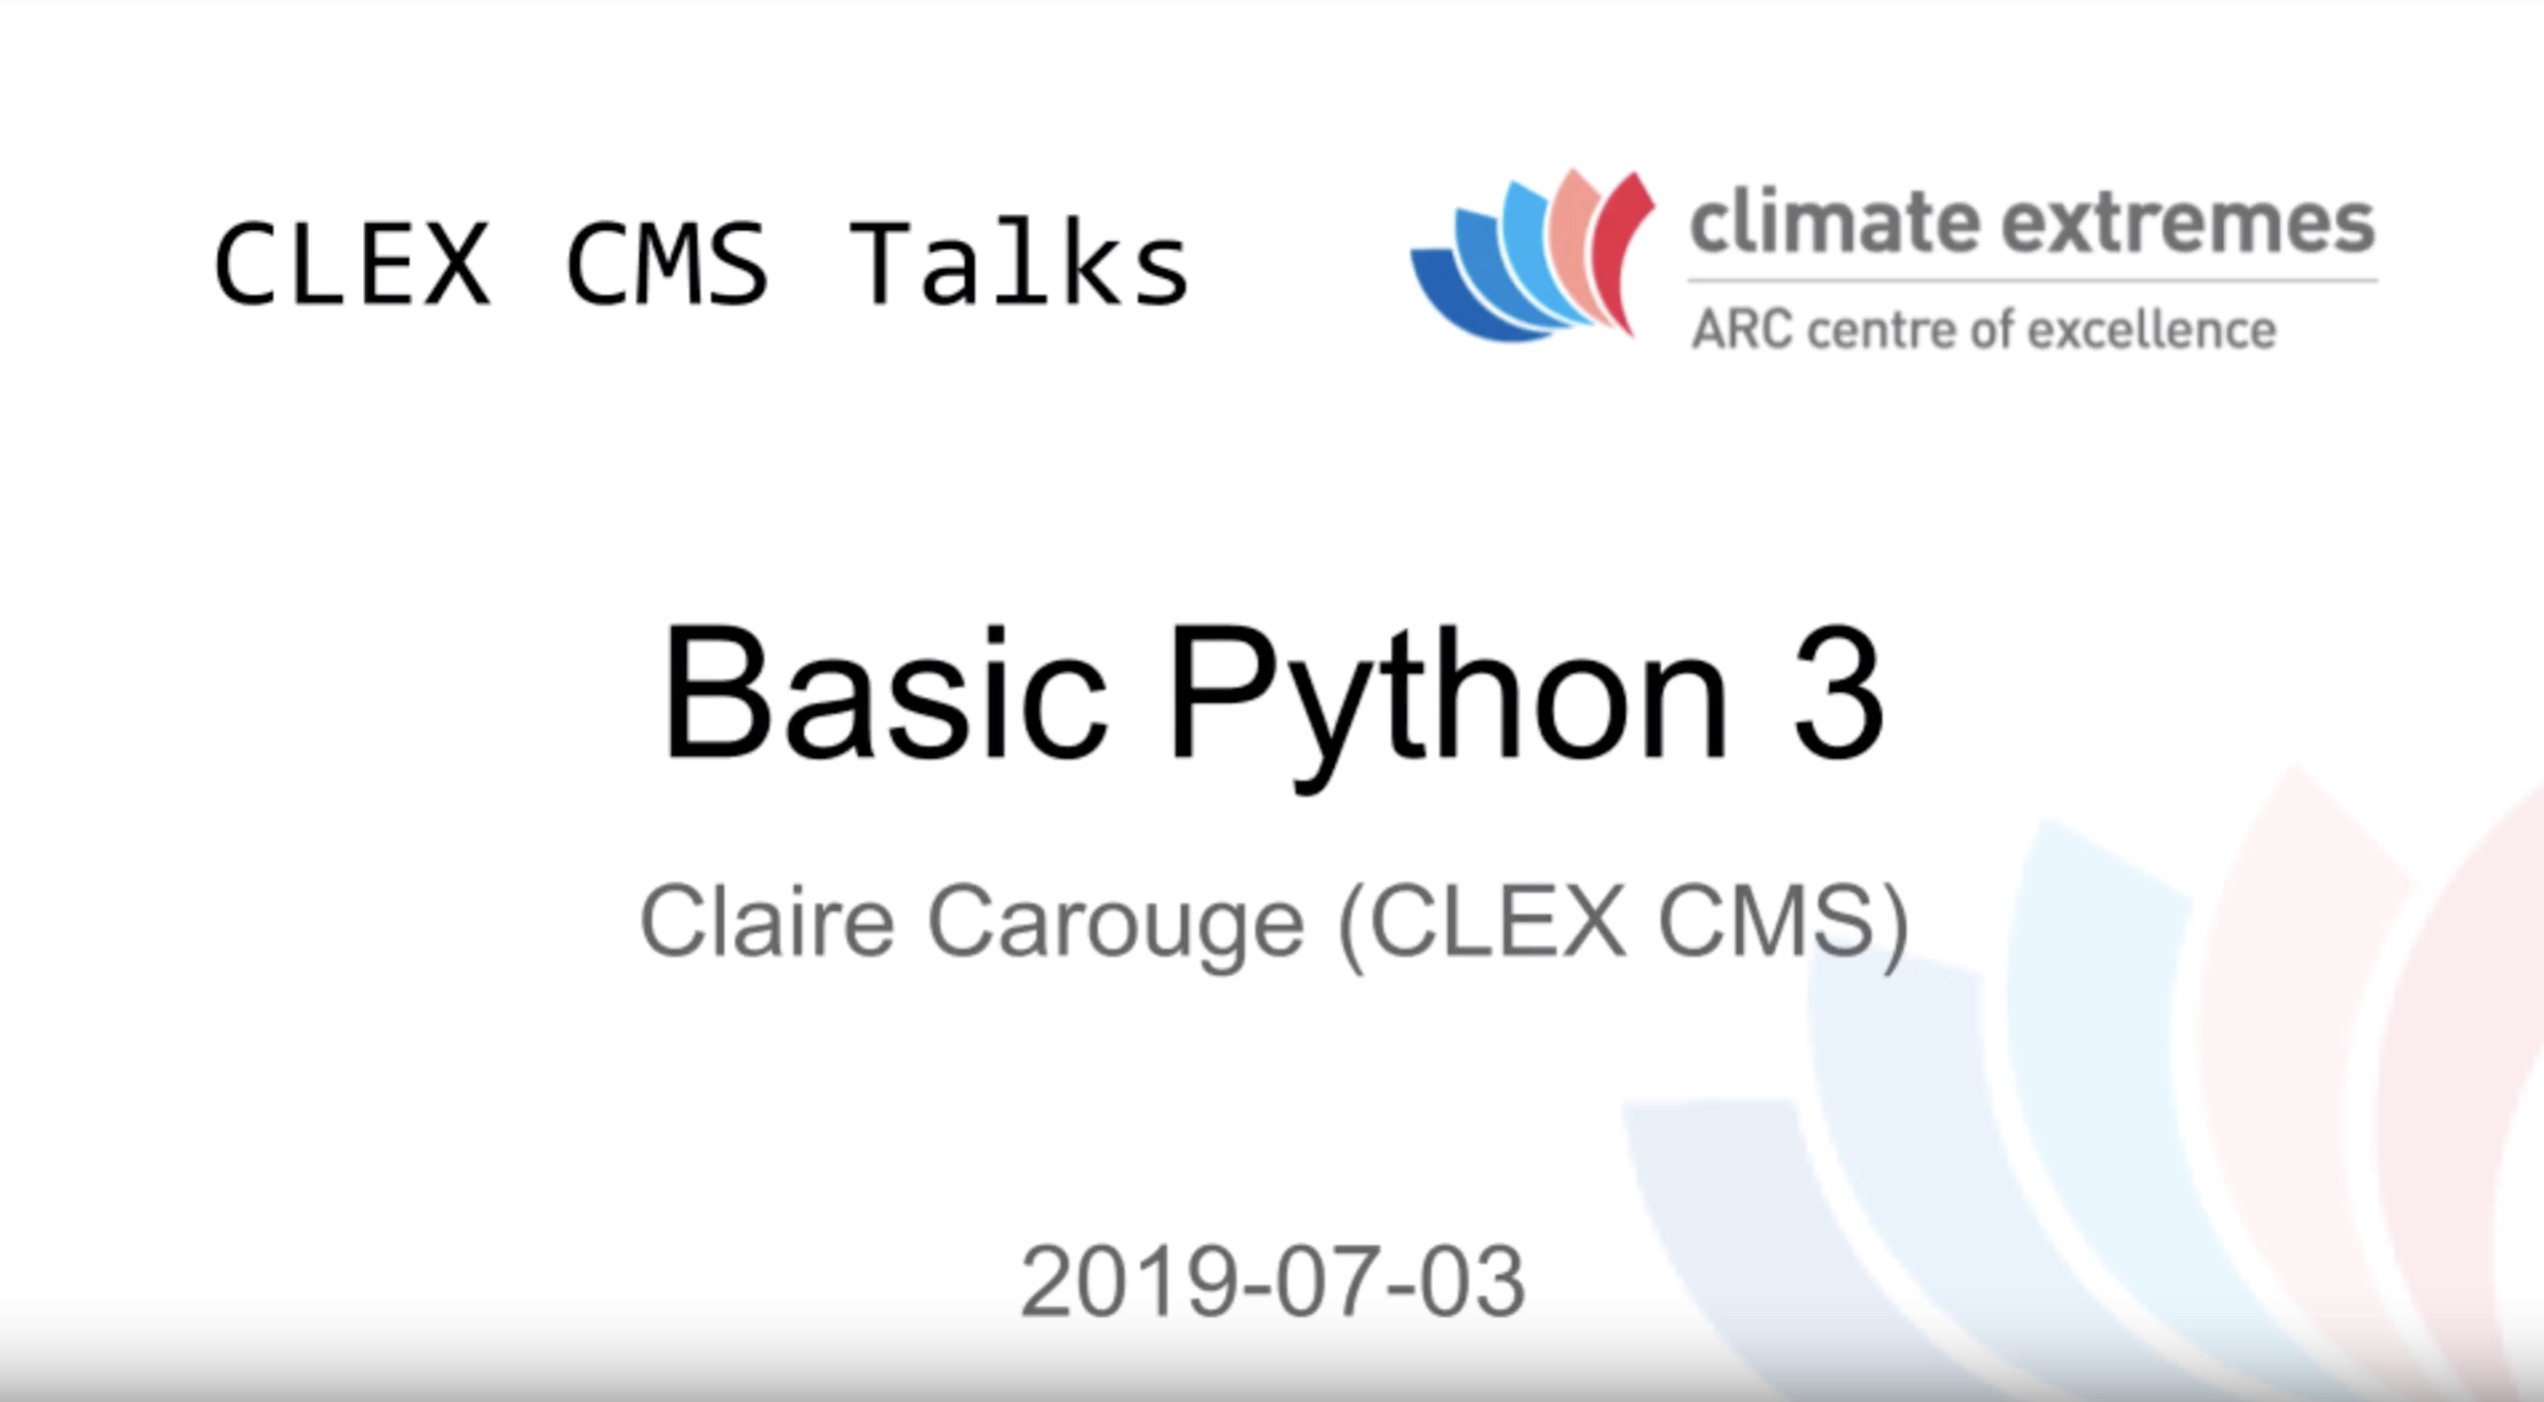 CMS talks: Basic Python 3